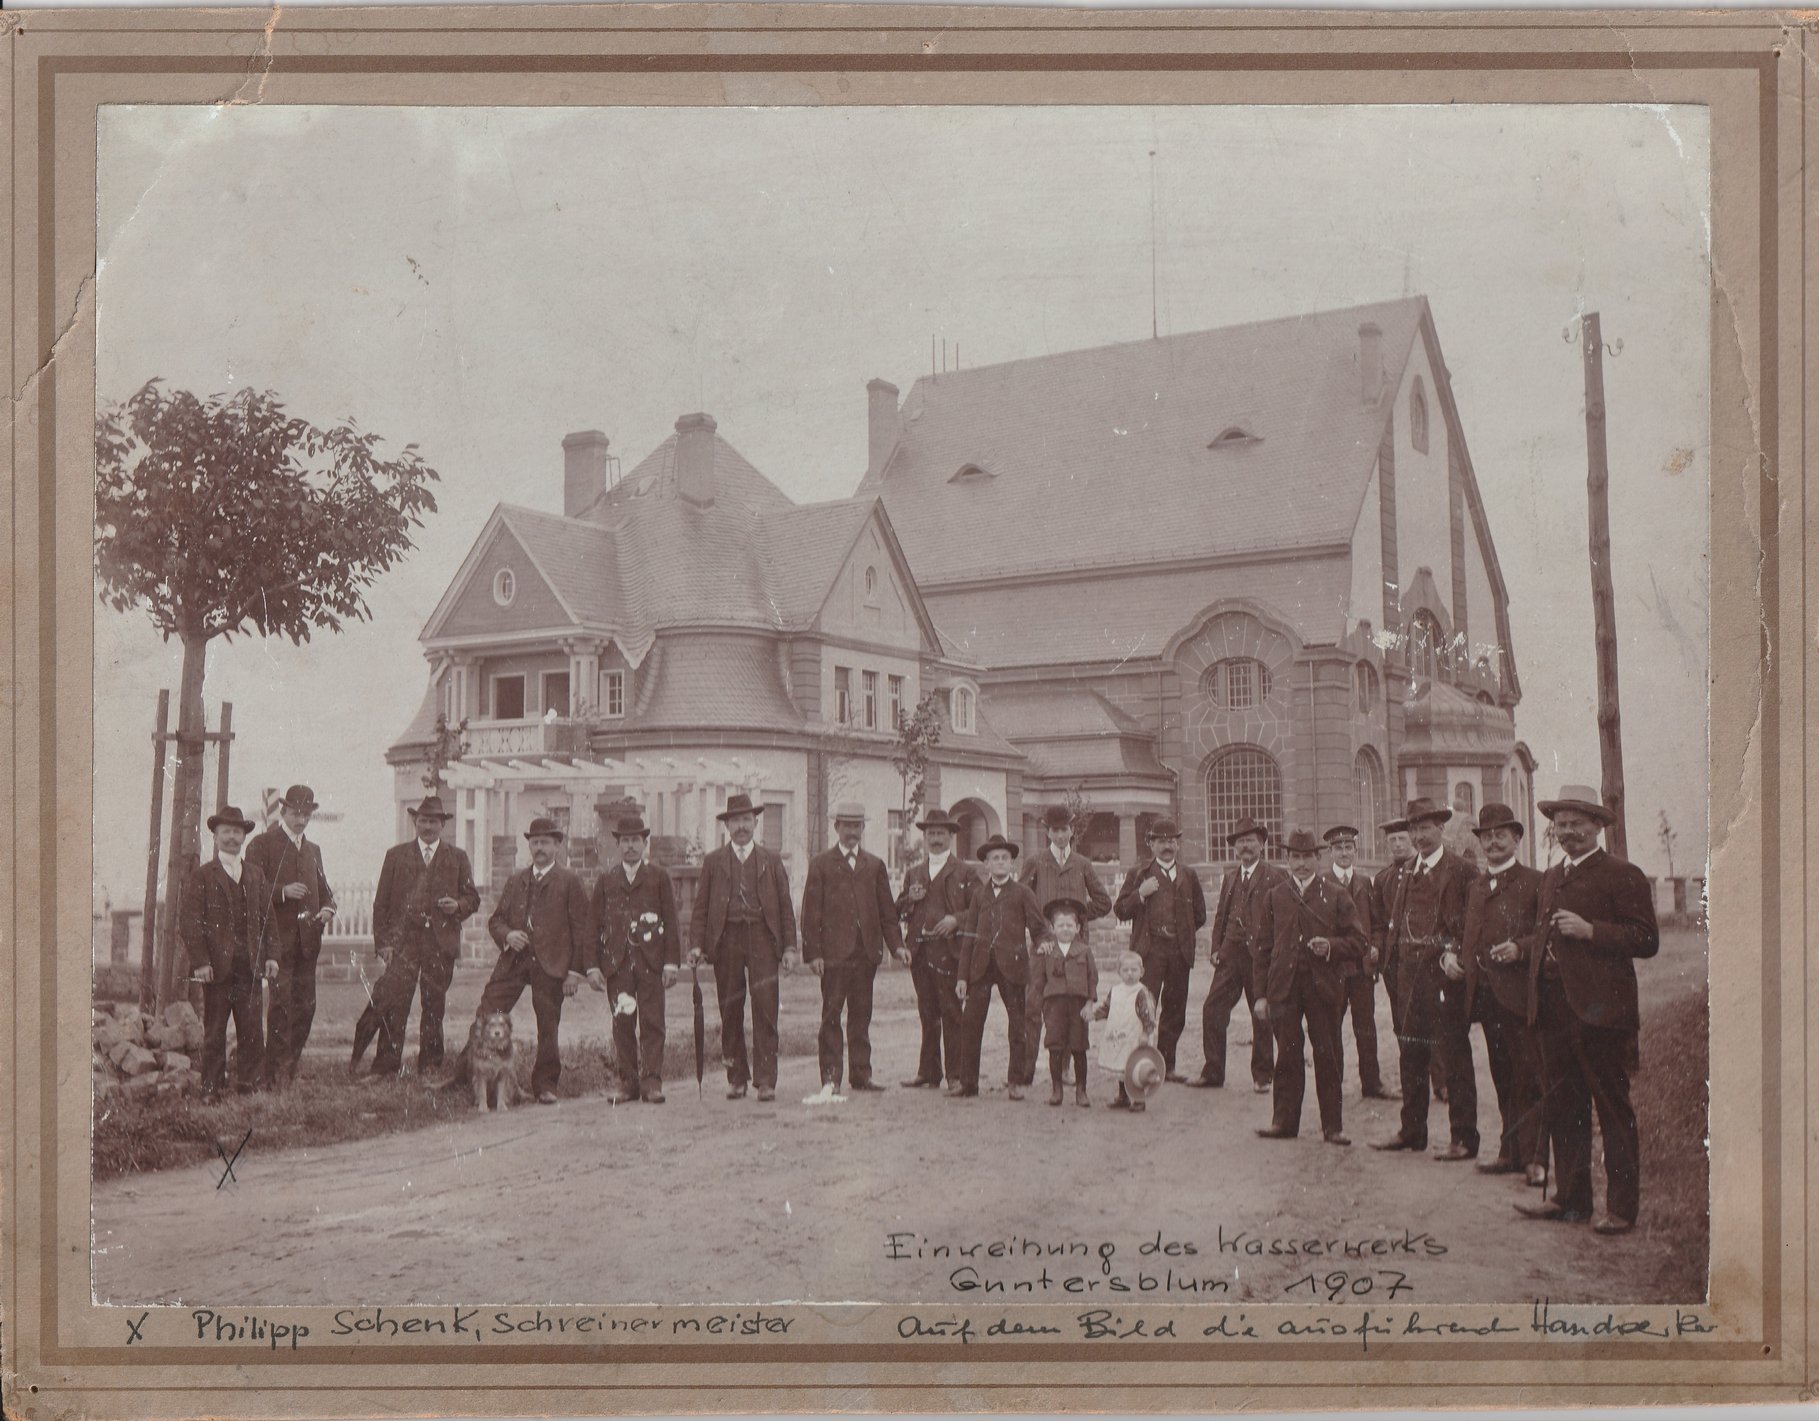 Fotografie zur Einweihung des Wasserwerks Guntersblum im Jahr 1907 (Museum Guntersblum CC BY-NC-SA)